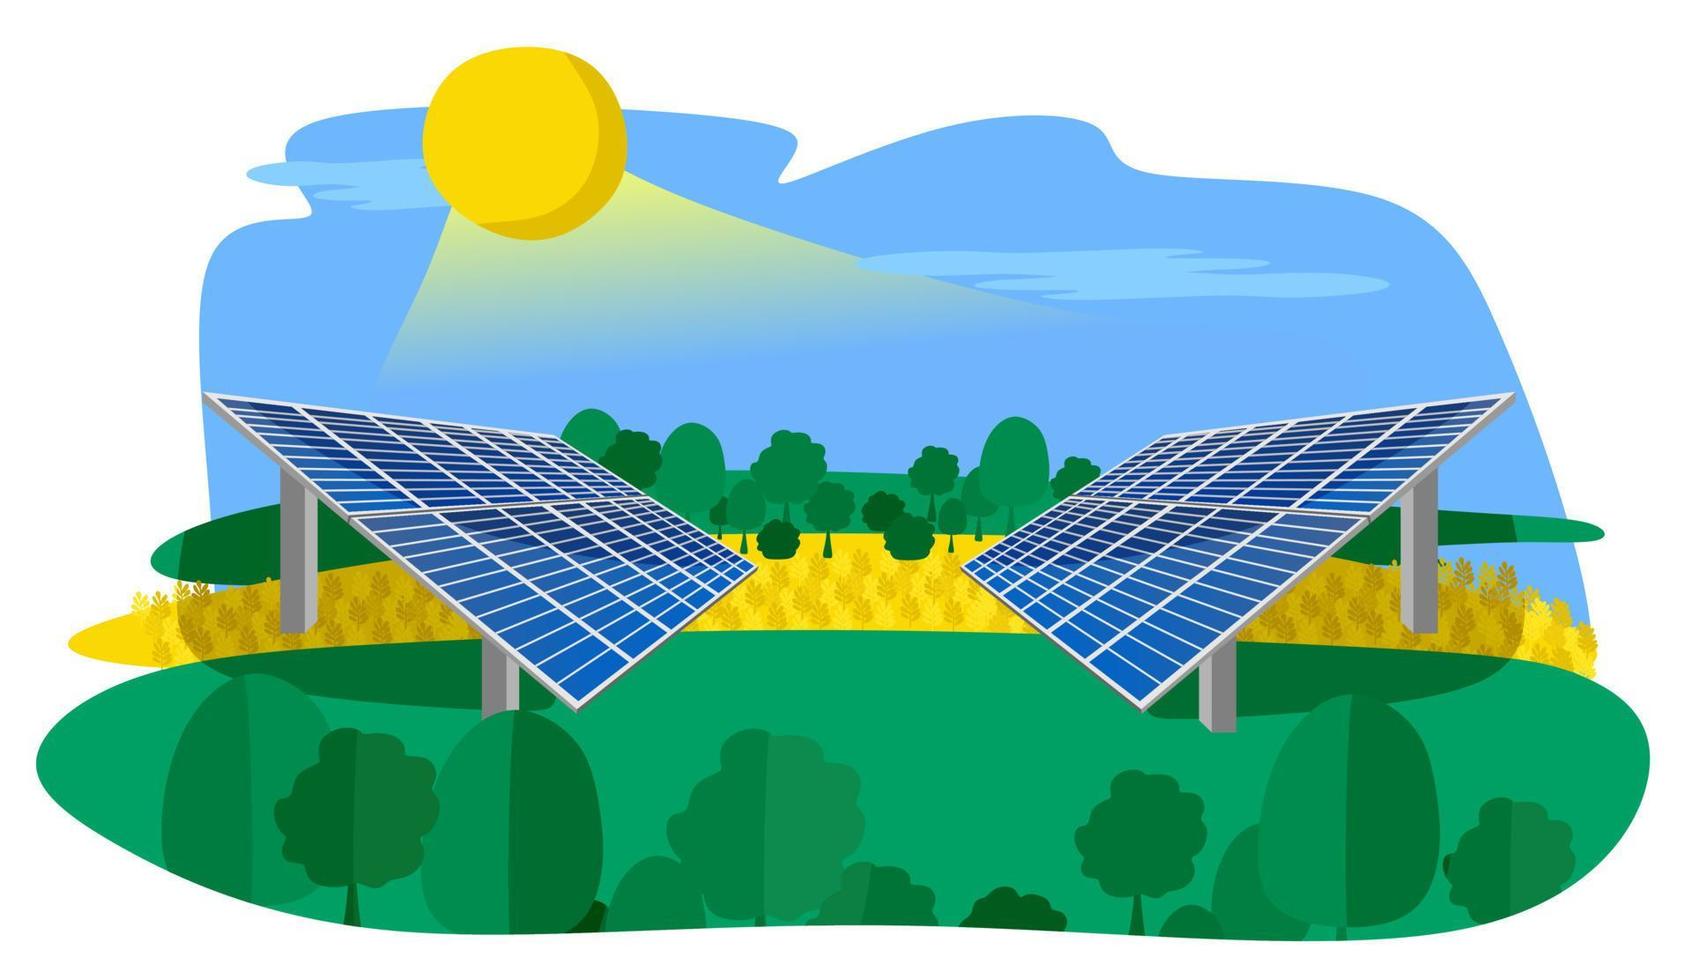 fuentes de energía renovables con paneles solares instalados en el campo. el concepto de energía limpia alternativa. ilustración plana vectorial. vector